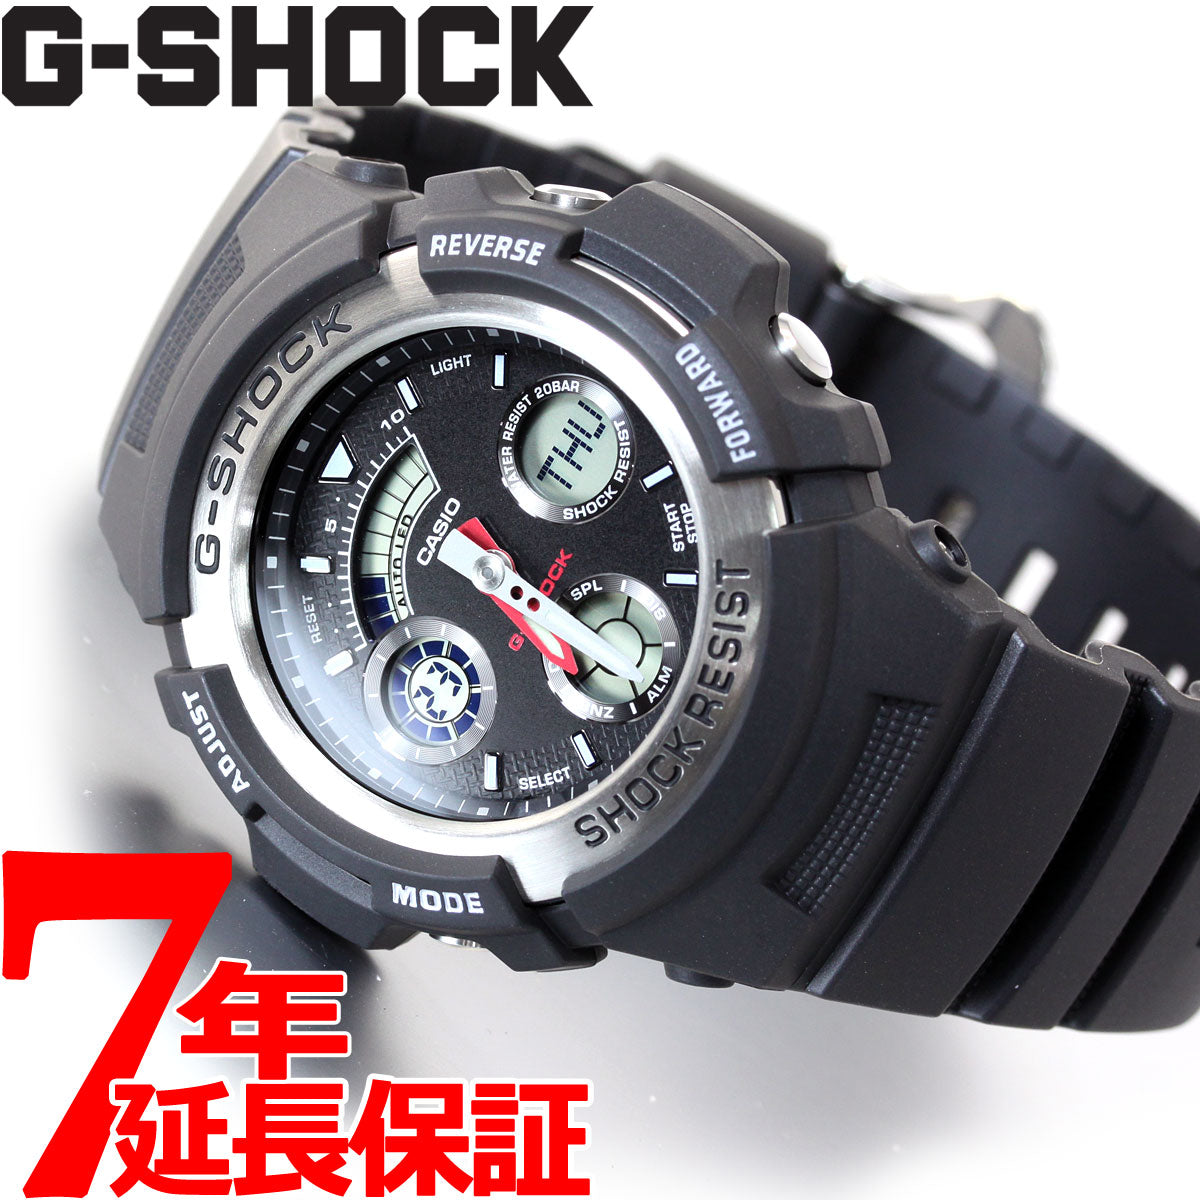 G-SHOCK アナログ デジタル カシオ CASIO Gショック 腕時計 コンビモデル AW-590-1AJF